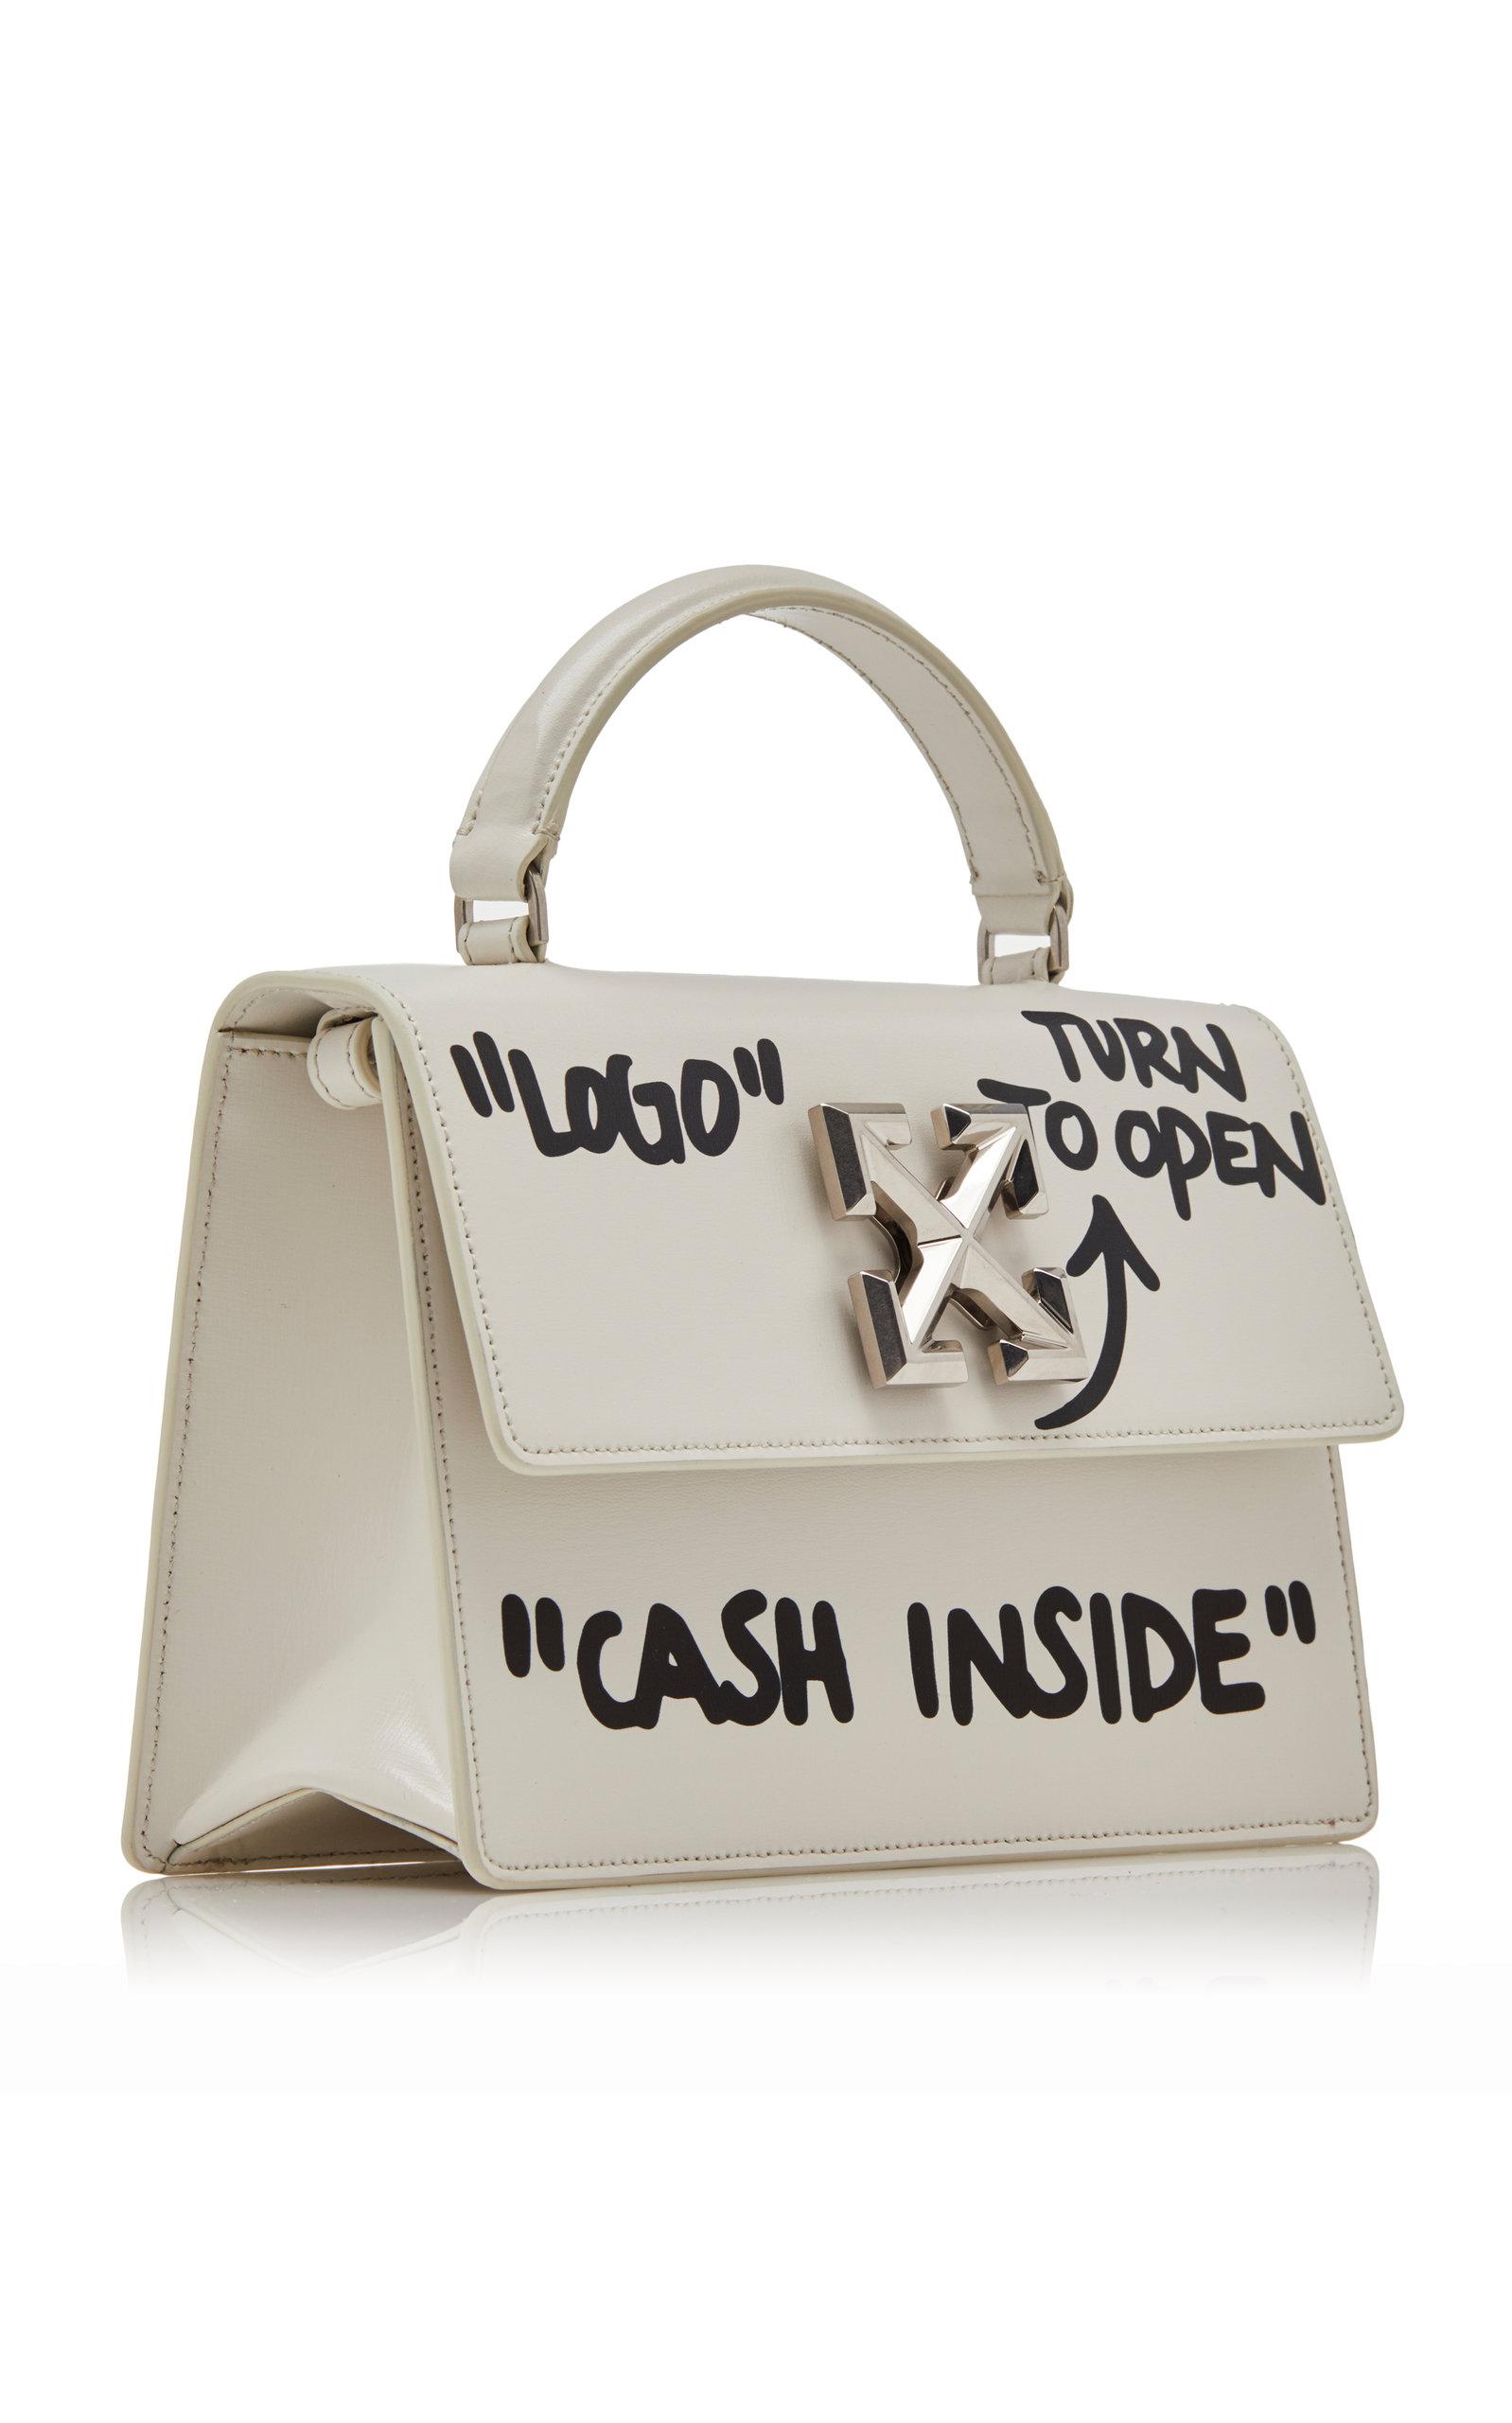 Lyst - Off-White c/o Virgil Abloh Jitney 1.4 Cash Inside Leather Bag in White